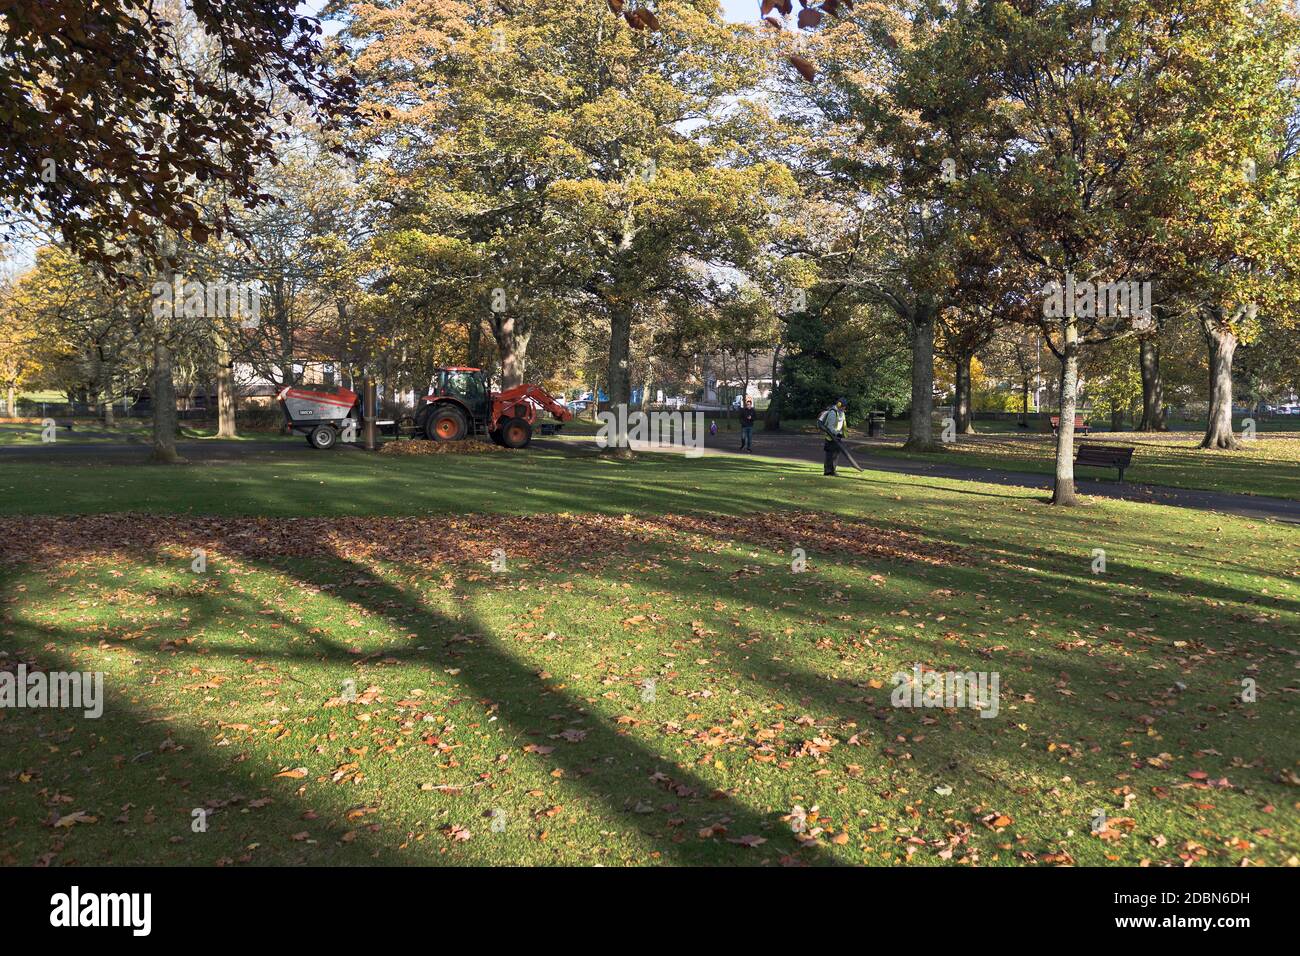 dh VICTORIA PARK ABERDEEN Council uomini che raccolgono foglie d'autunno parco con trattore a ventosa foglie autumnal colori parchi scozia Foto Stock